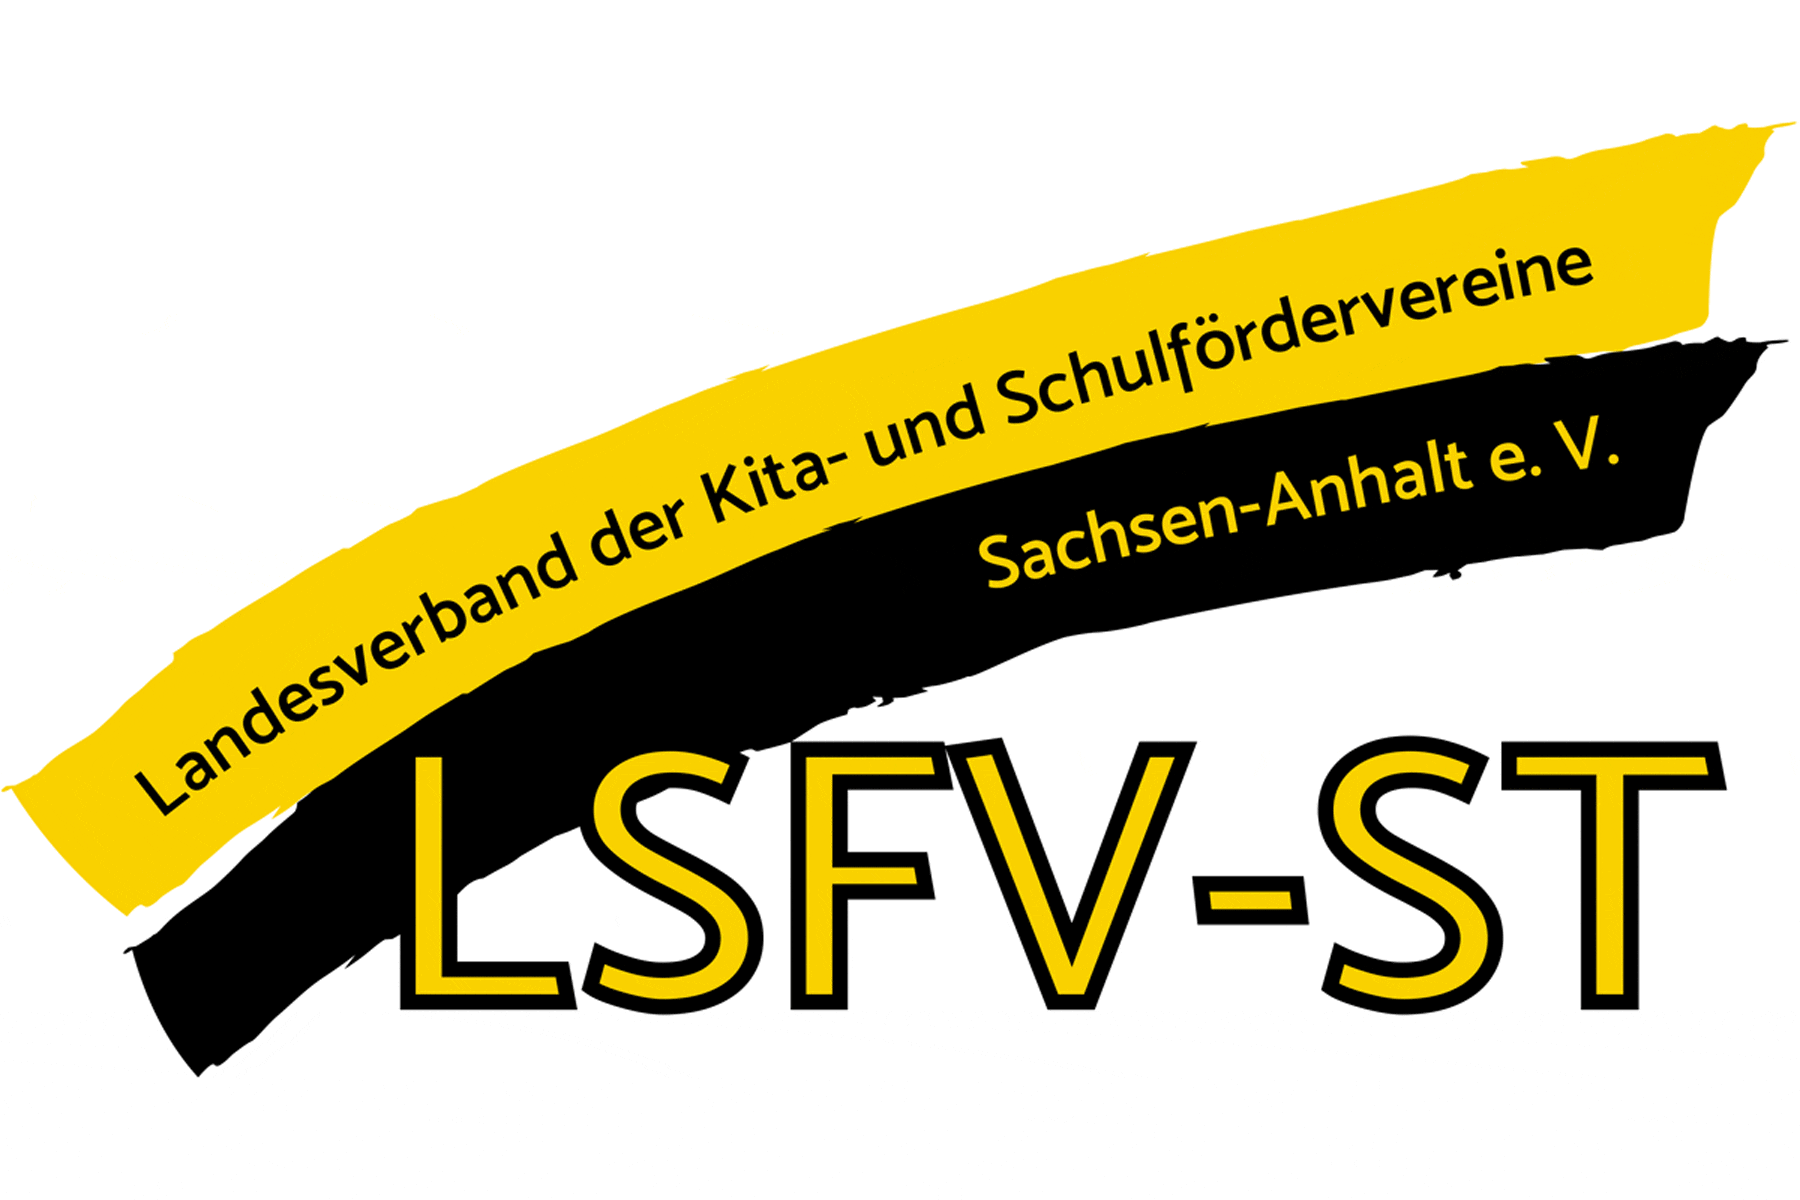 Landesverband der Kita- und Schulfördervereine Sachsen-Anhalt e. V. (LSFV-ST)